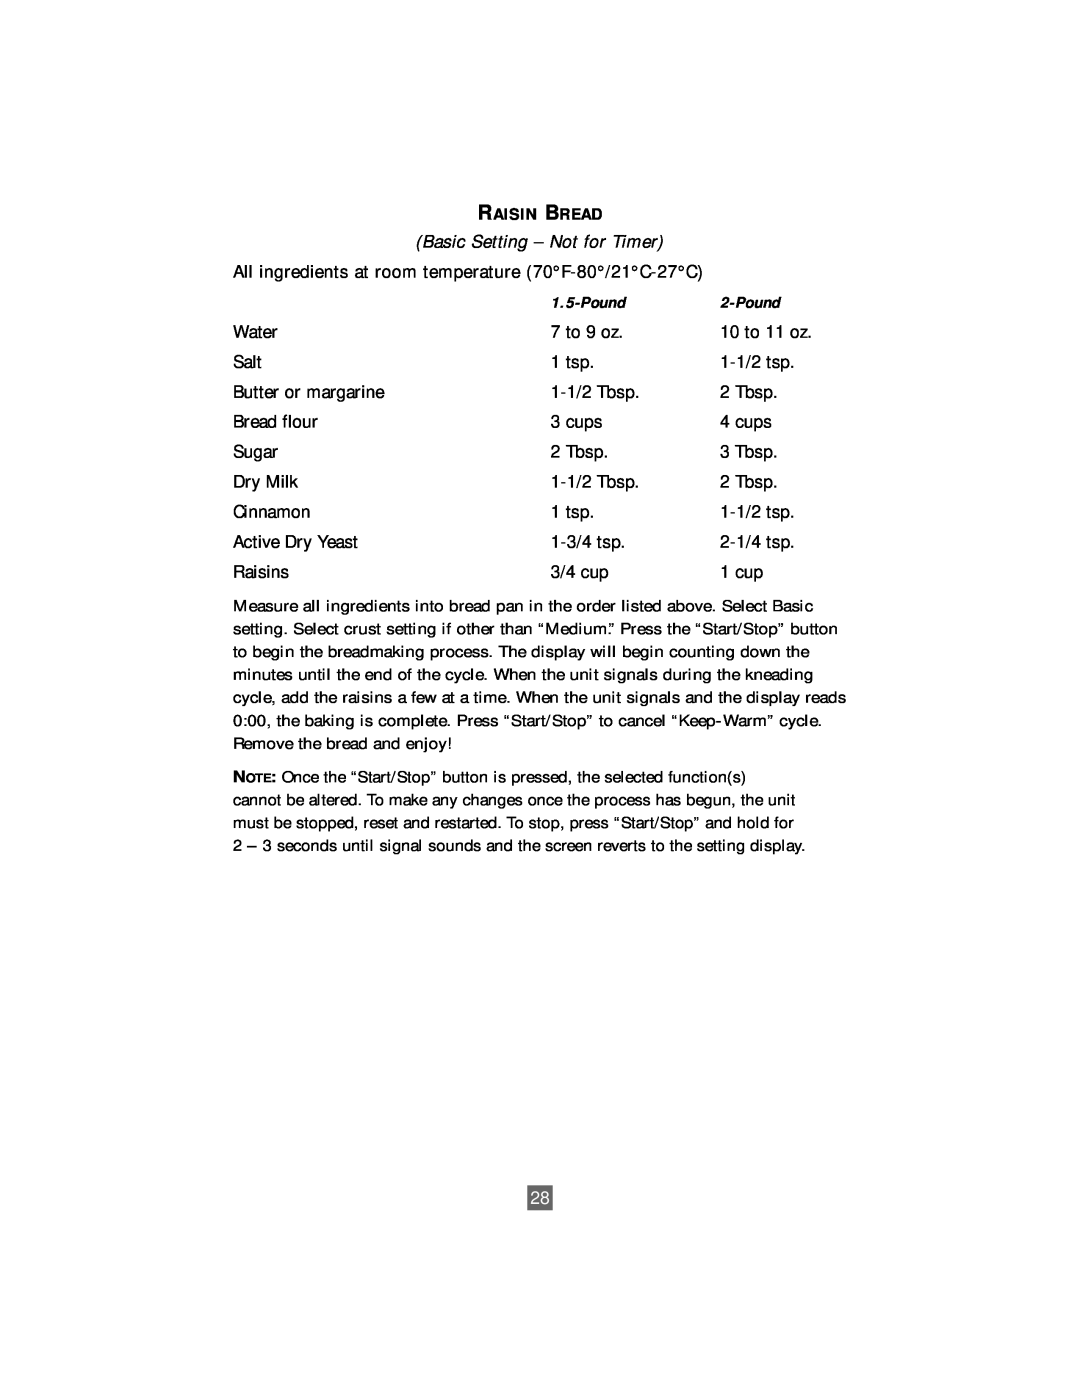 Sunbeam Deluxe 2-Pound Bread & Dough Maker manual Basic Setting - Not for Timer, Raisin Bread 